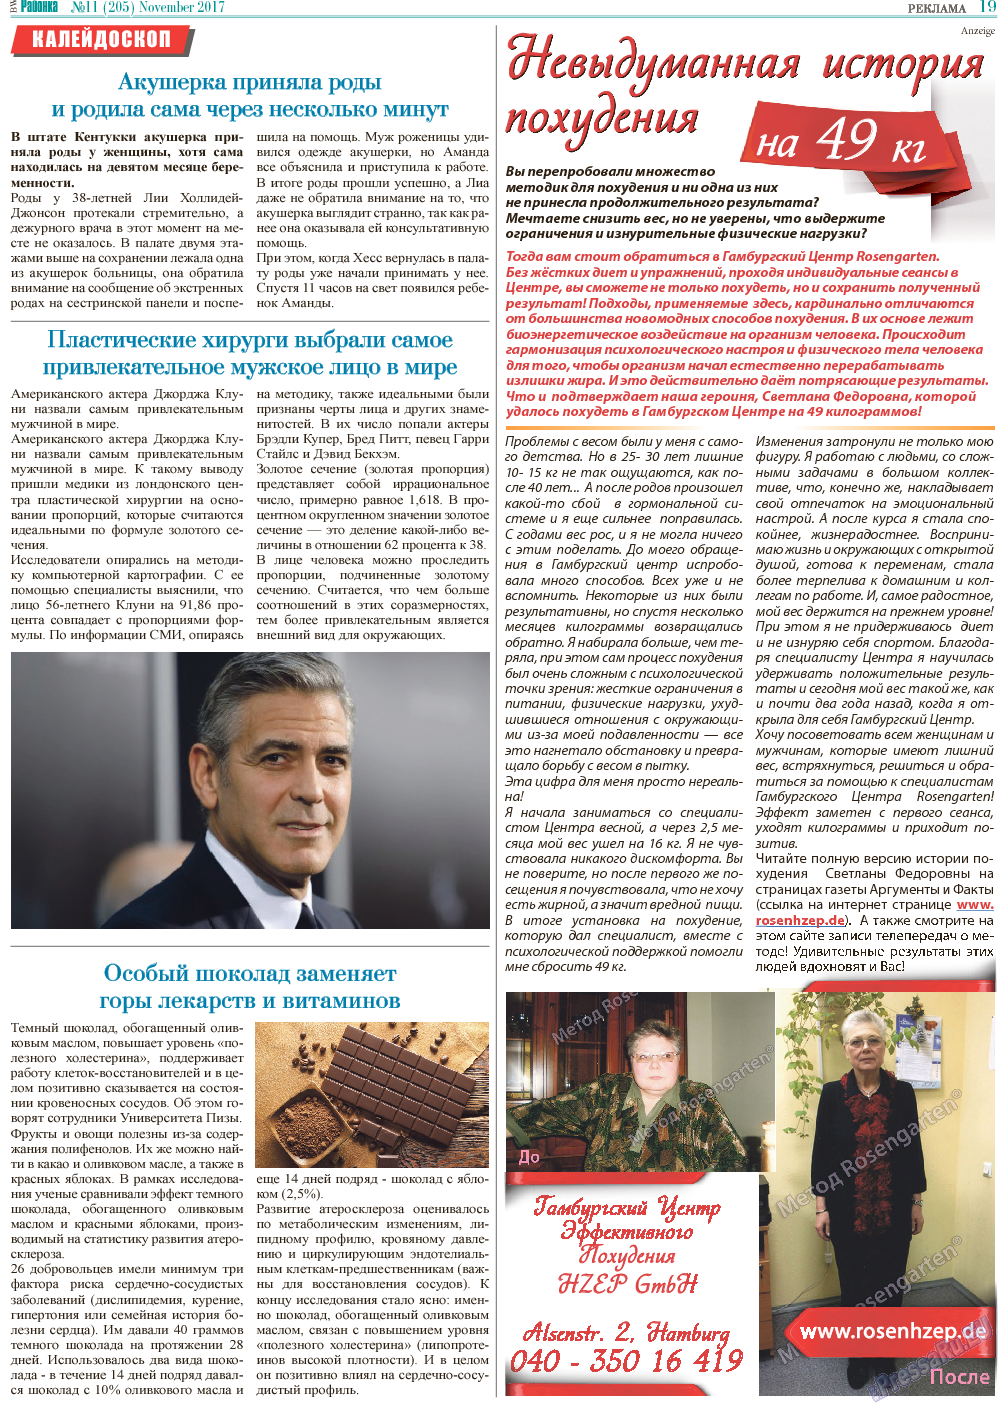 Районка-Süd-West (газета). 2017 год, номер 11, стр. 19